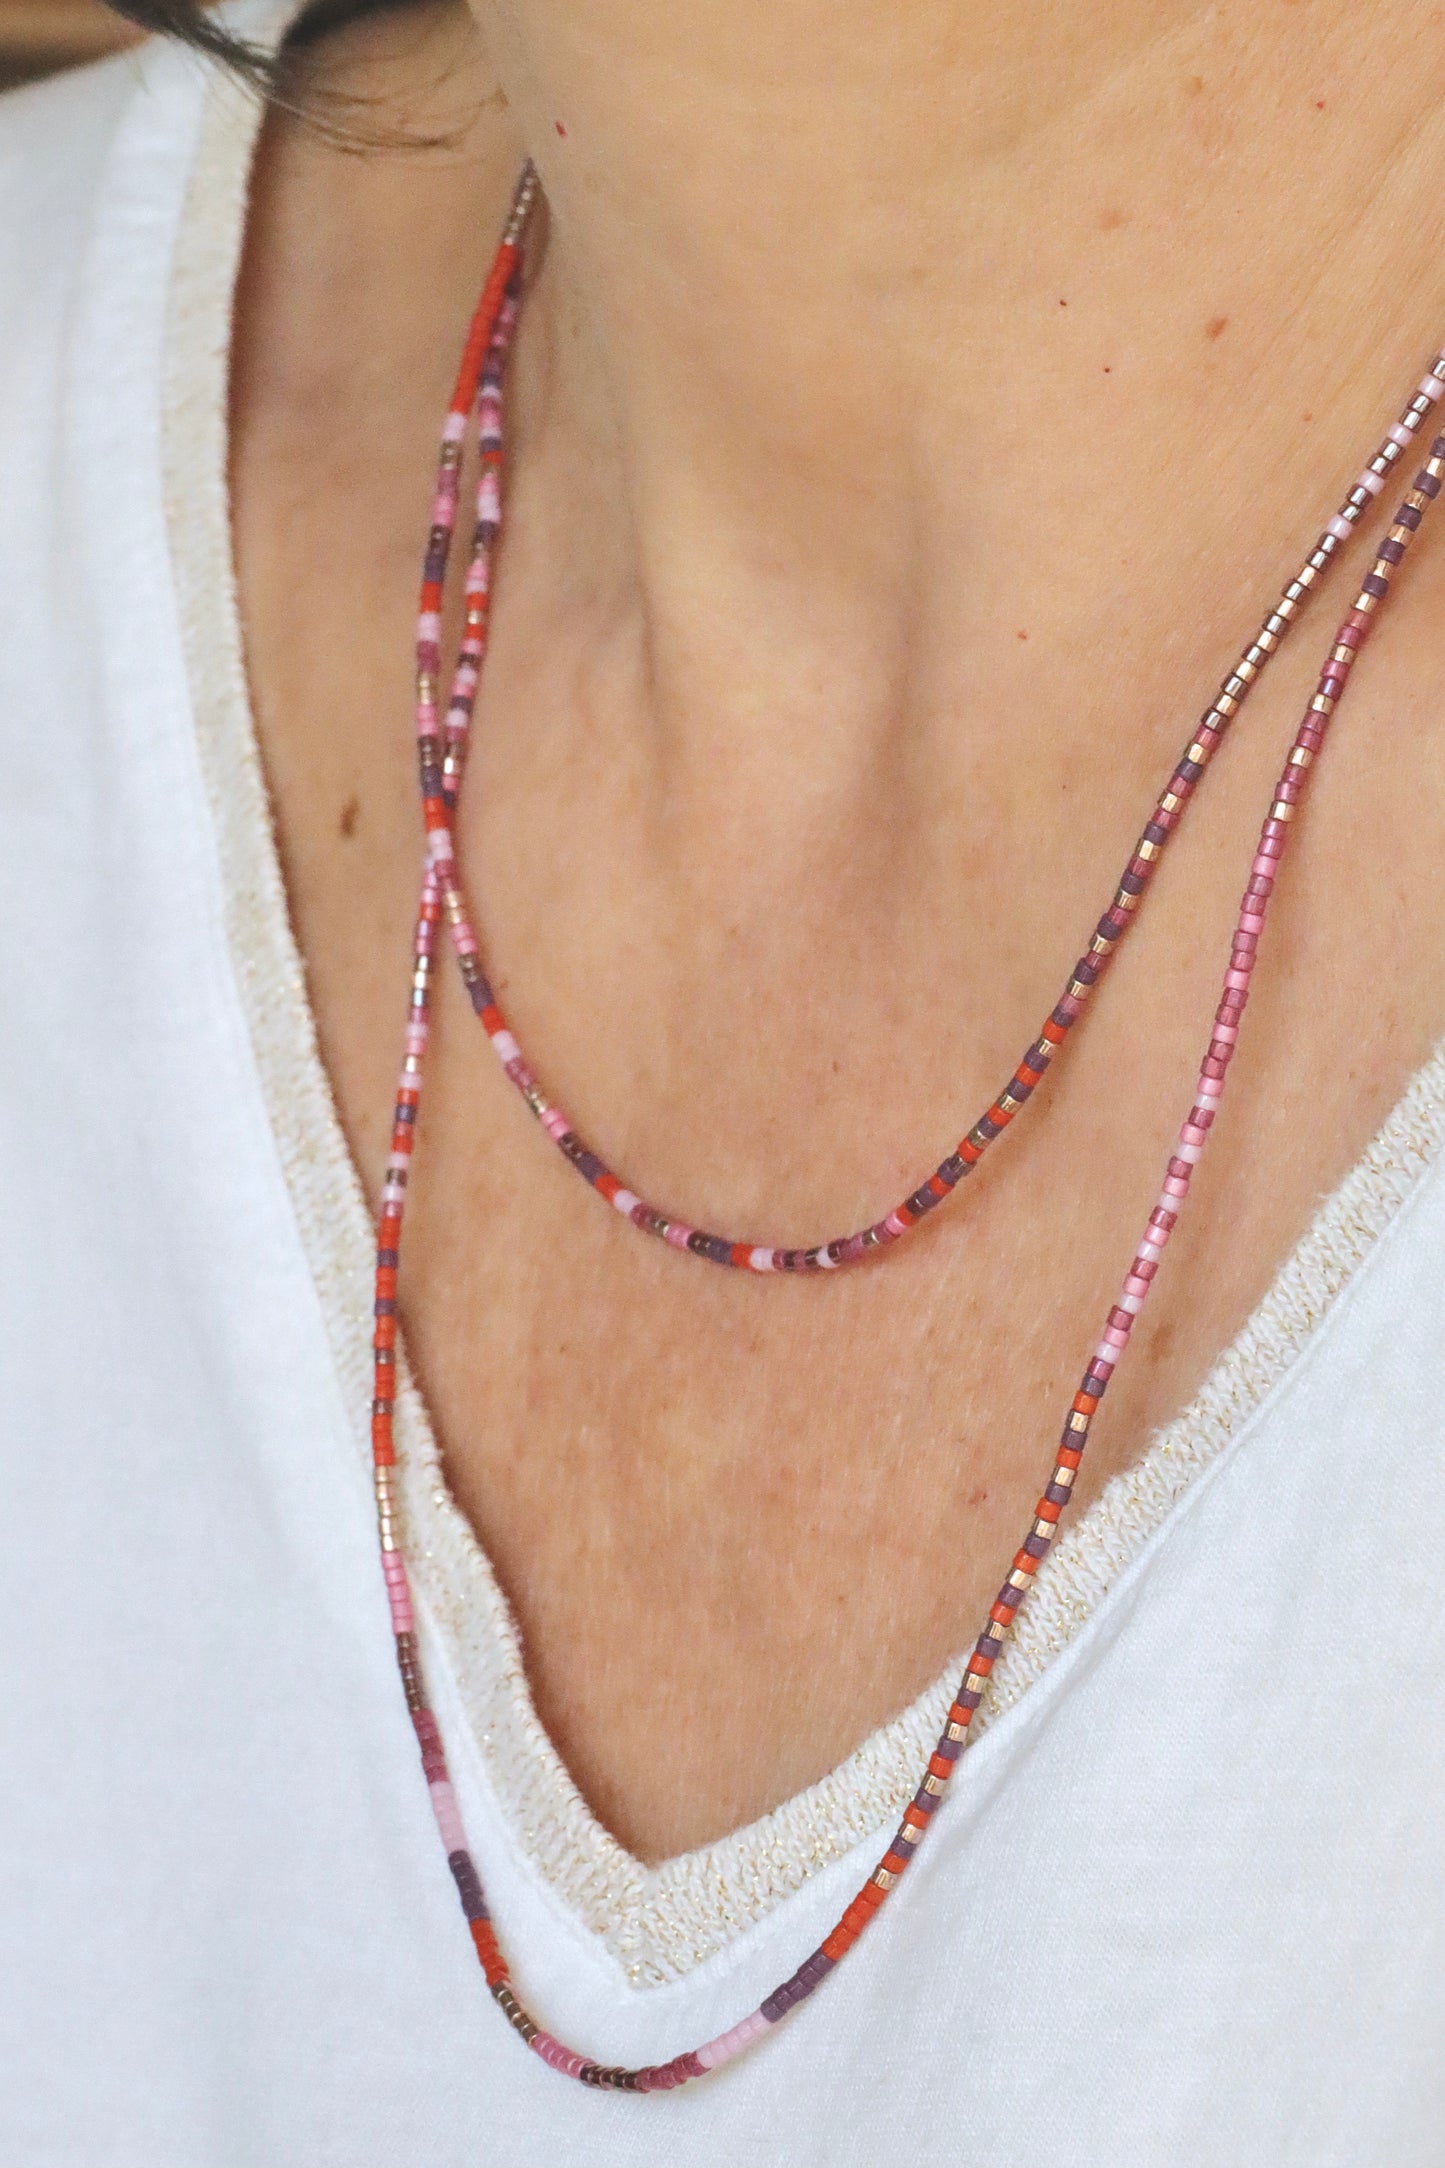 Collier Bracelet en perles de verre rose et orange, porté en collier double tour